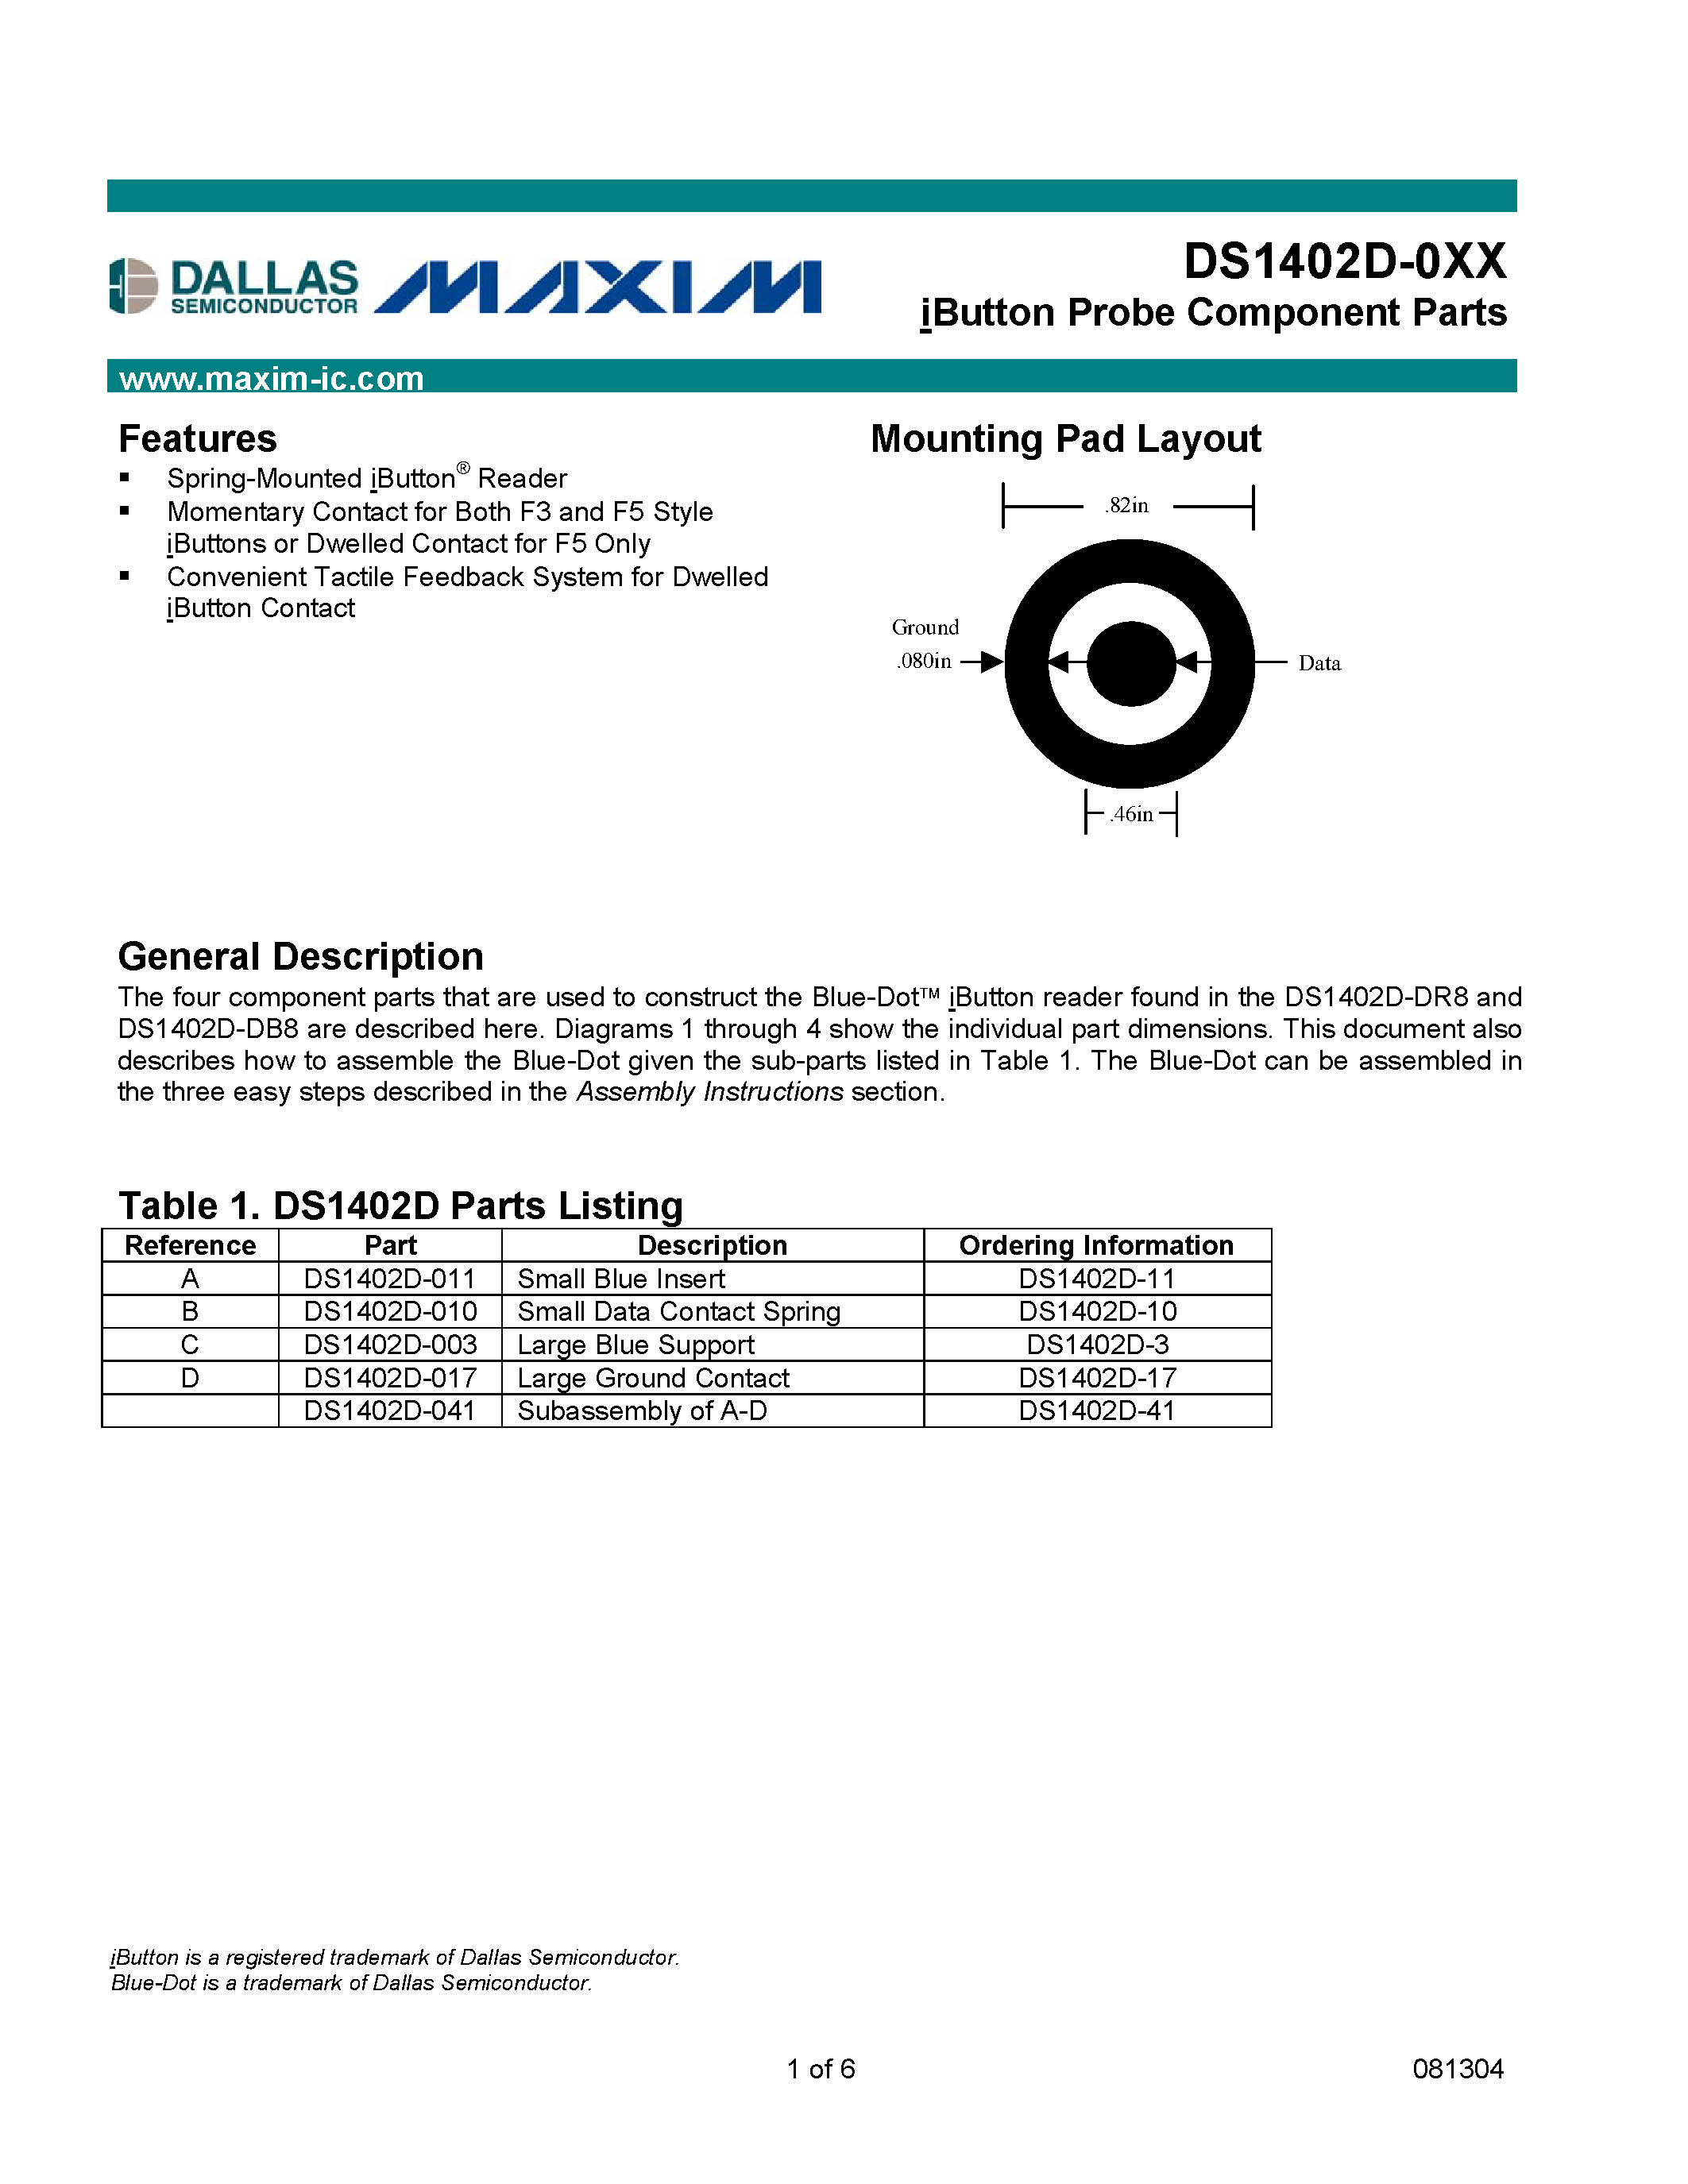 Даташит DS1402D-017 - iButton Probe Component Parts страница 1